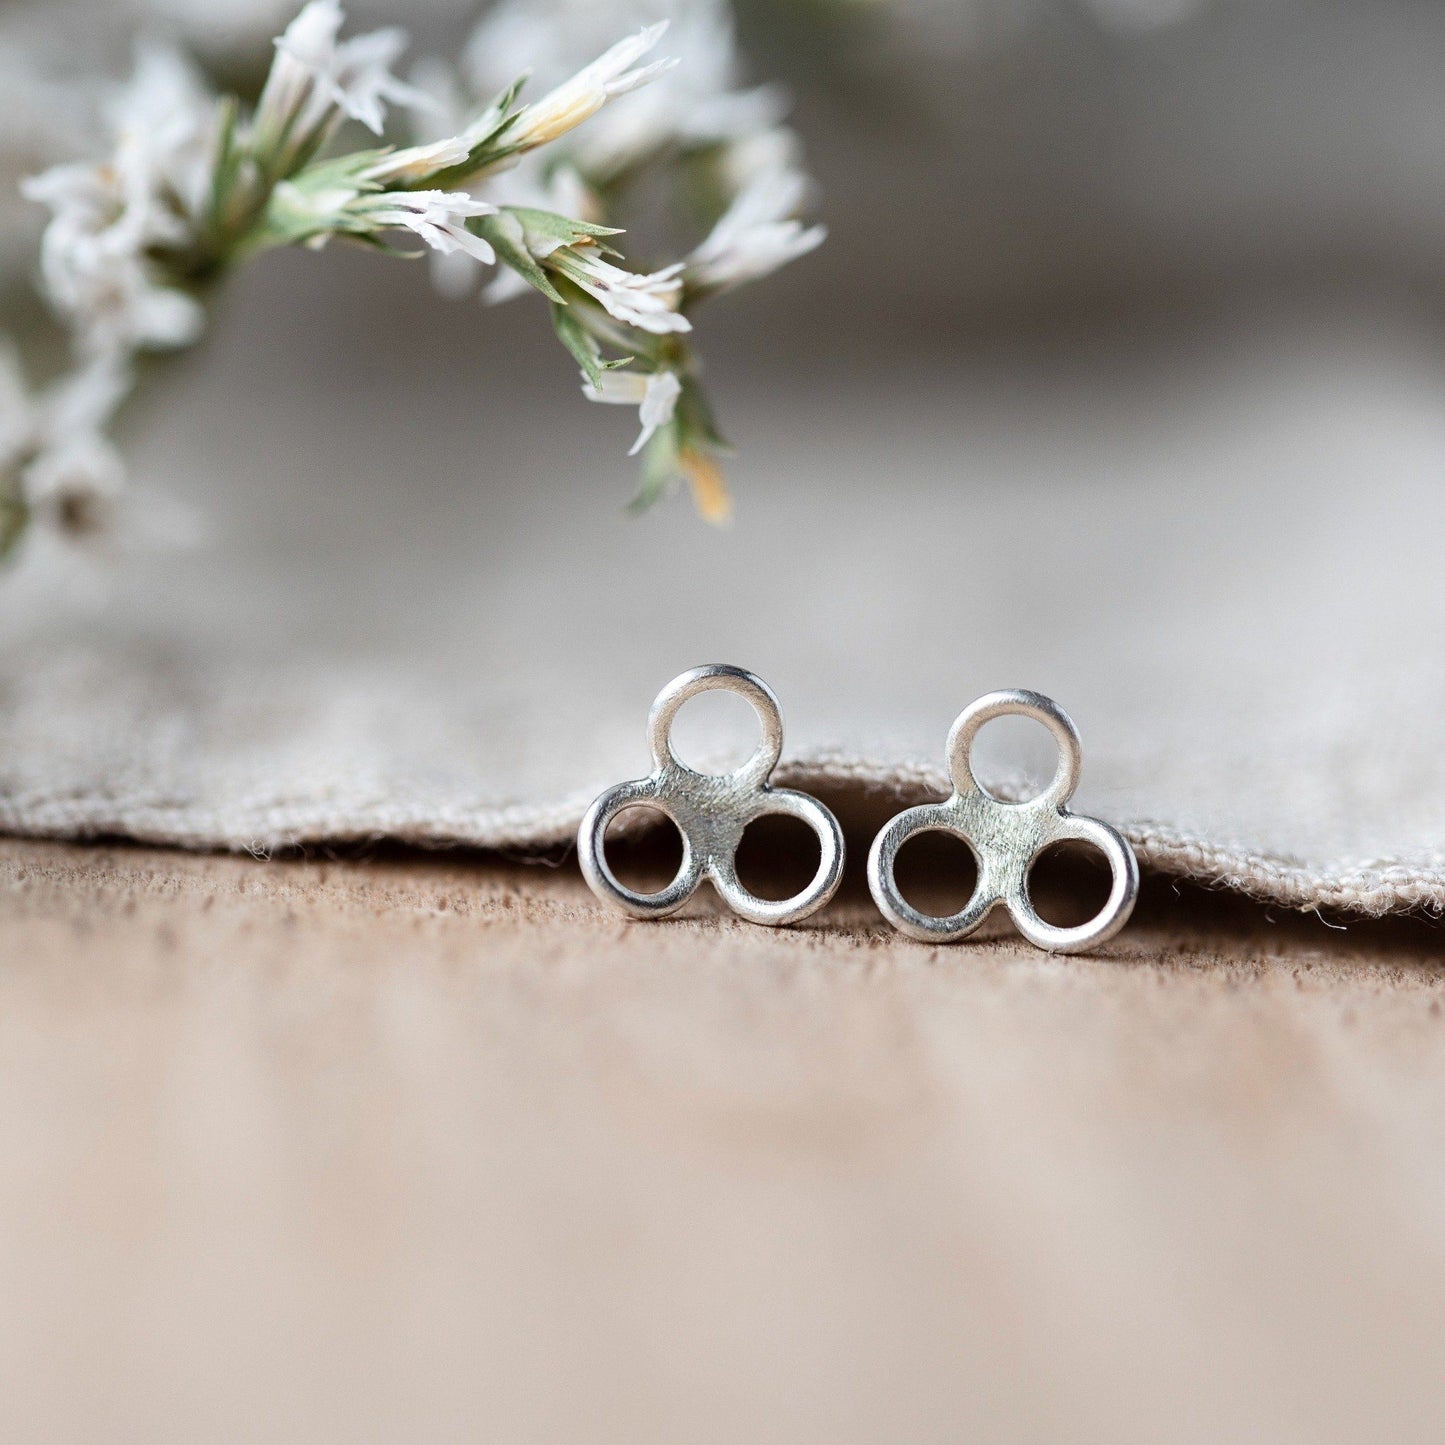 Silver Petal Stud Earrings - Handmade silver Jewellery by Anna Cavlert Jewellery in the UK